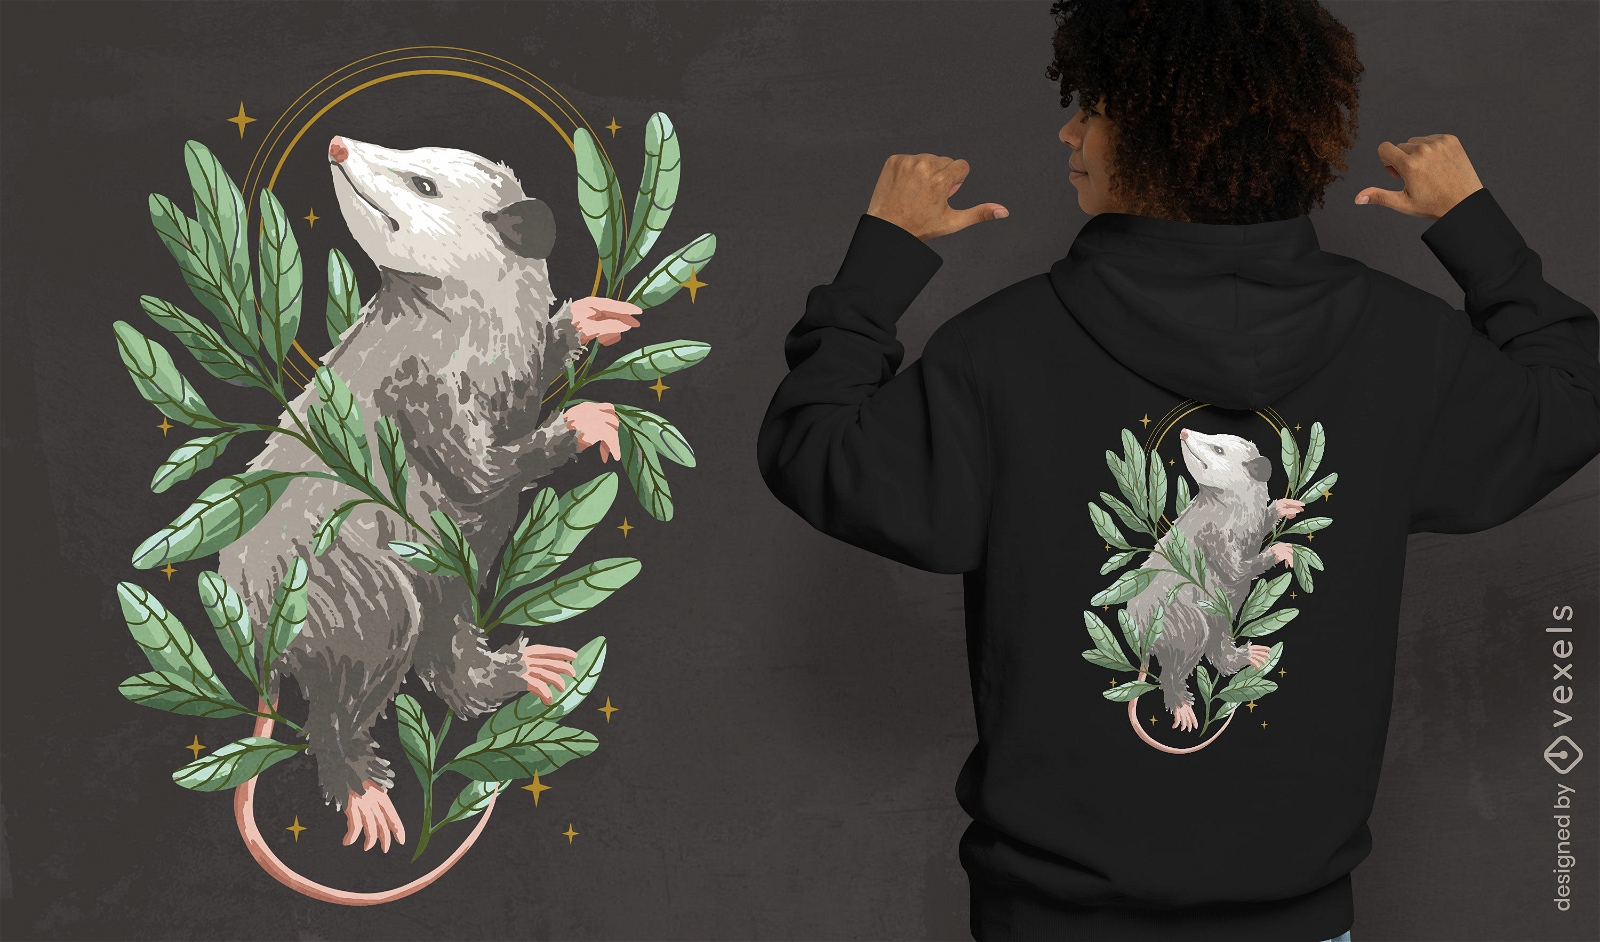 Opossum-Tier mit Bl?tter-T-Shirt-Design